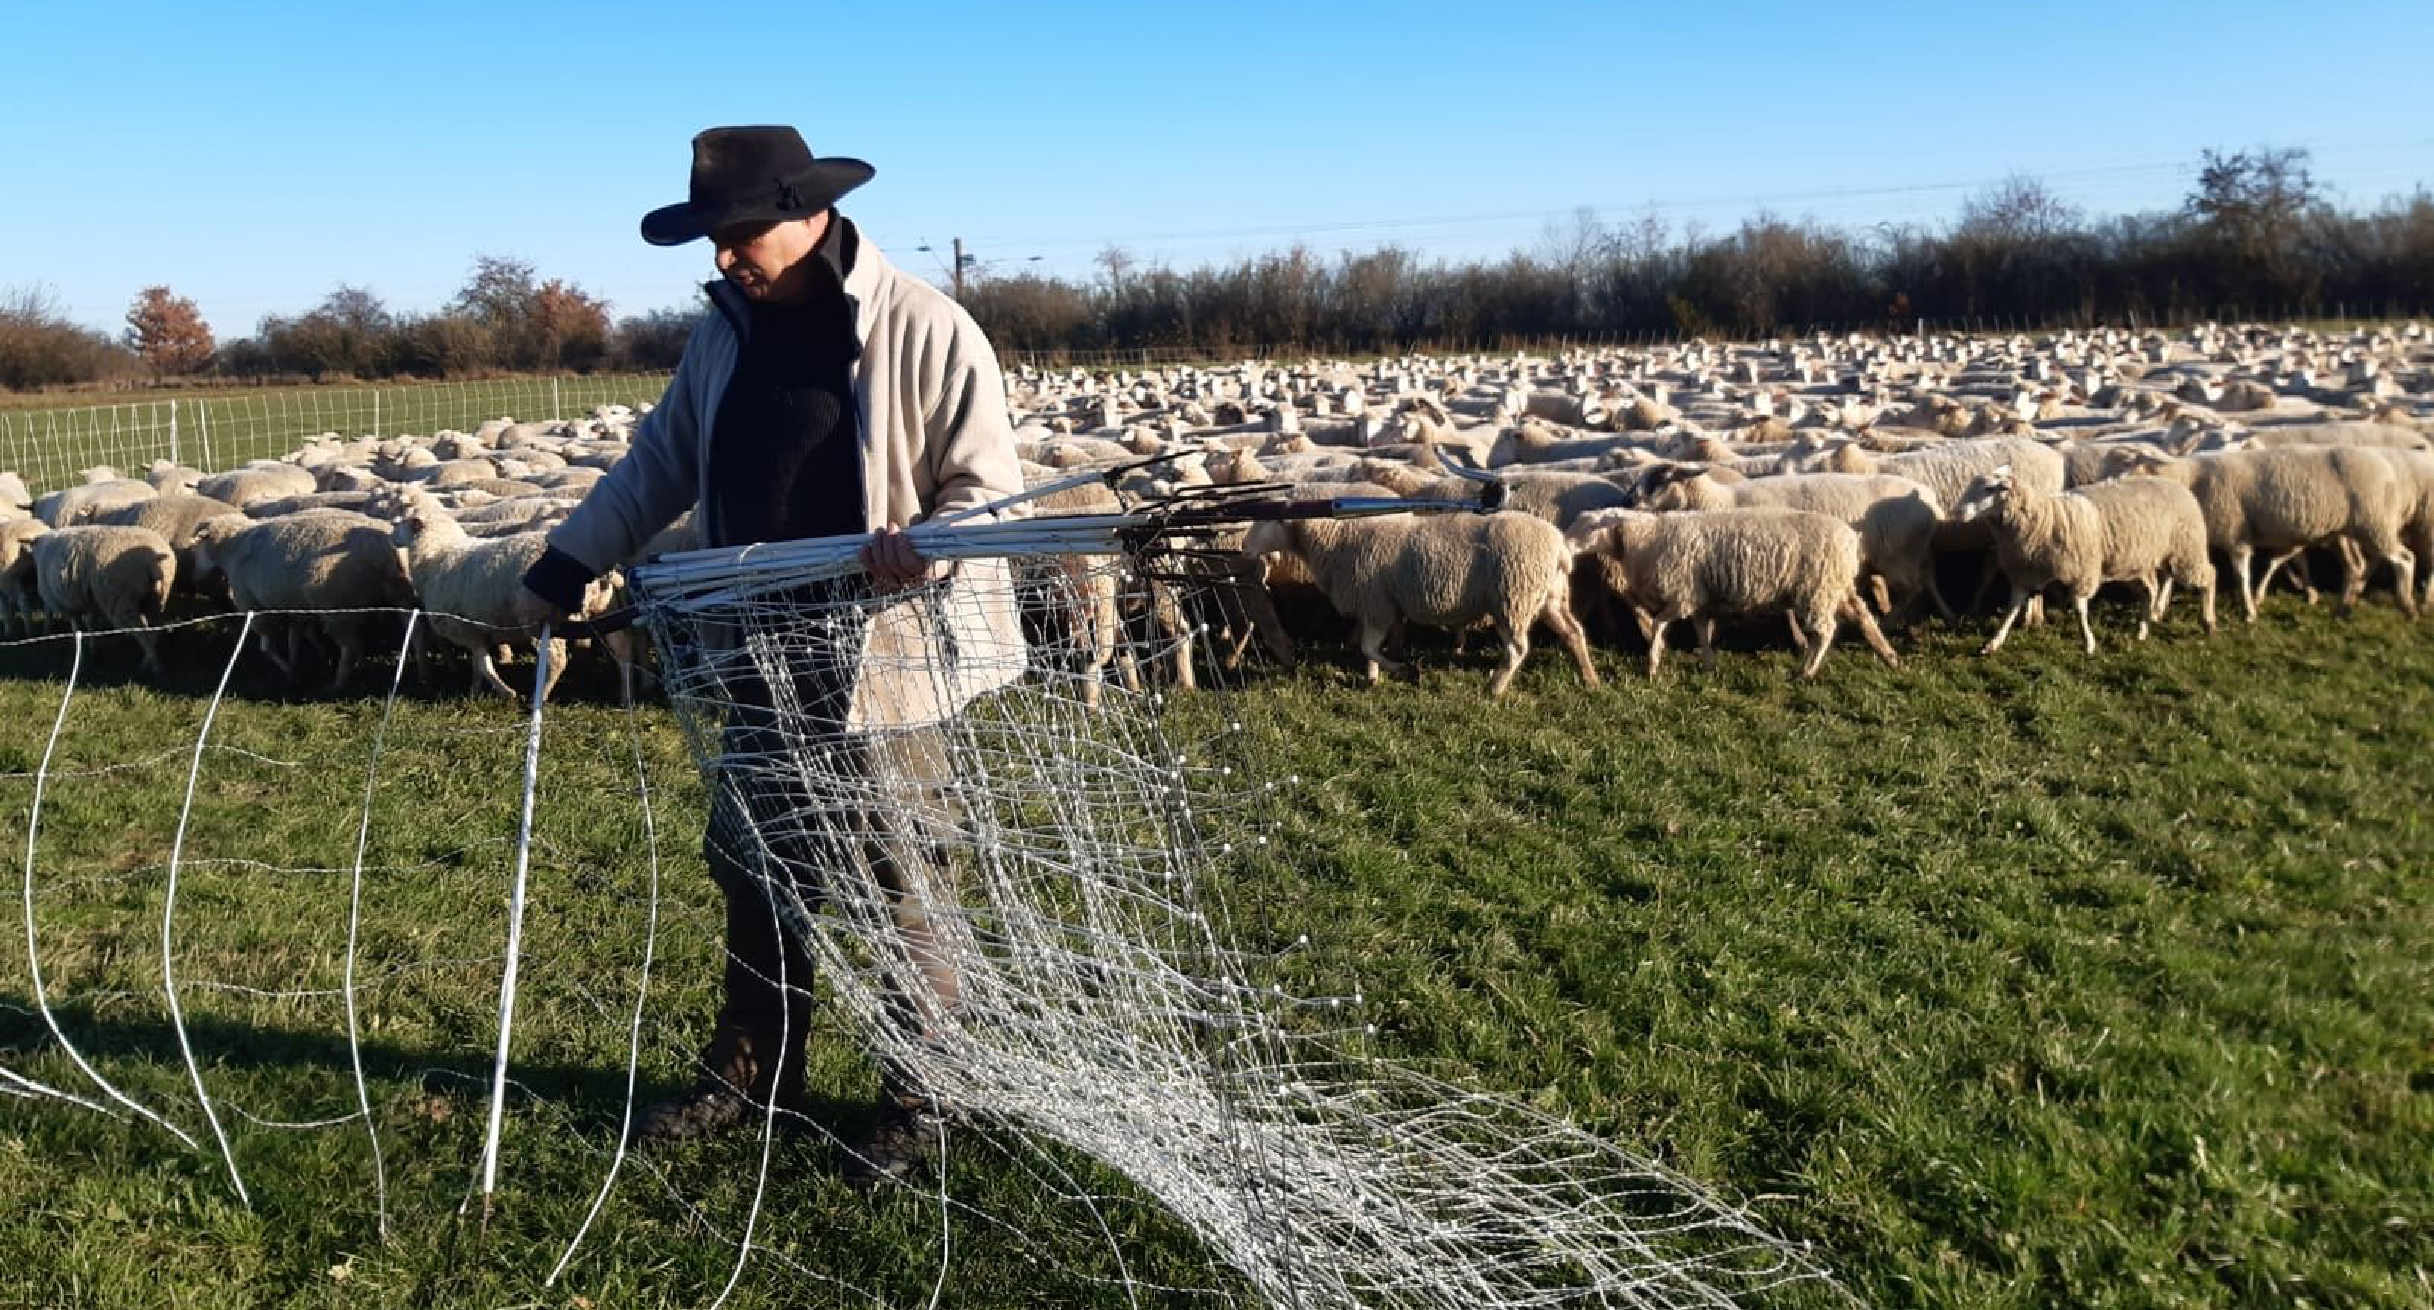 Ein Schäfer errichtet eine Schutzzaun um seine Schafherde vor einem Tierangriff zu schützen']